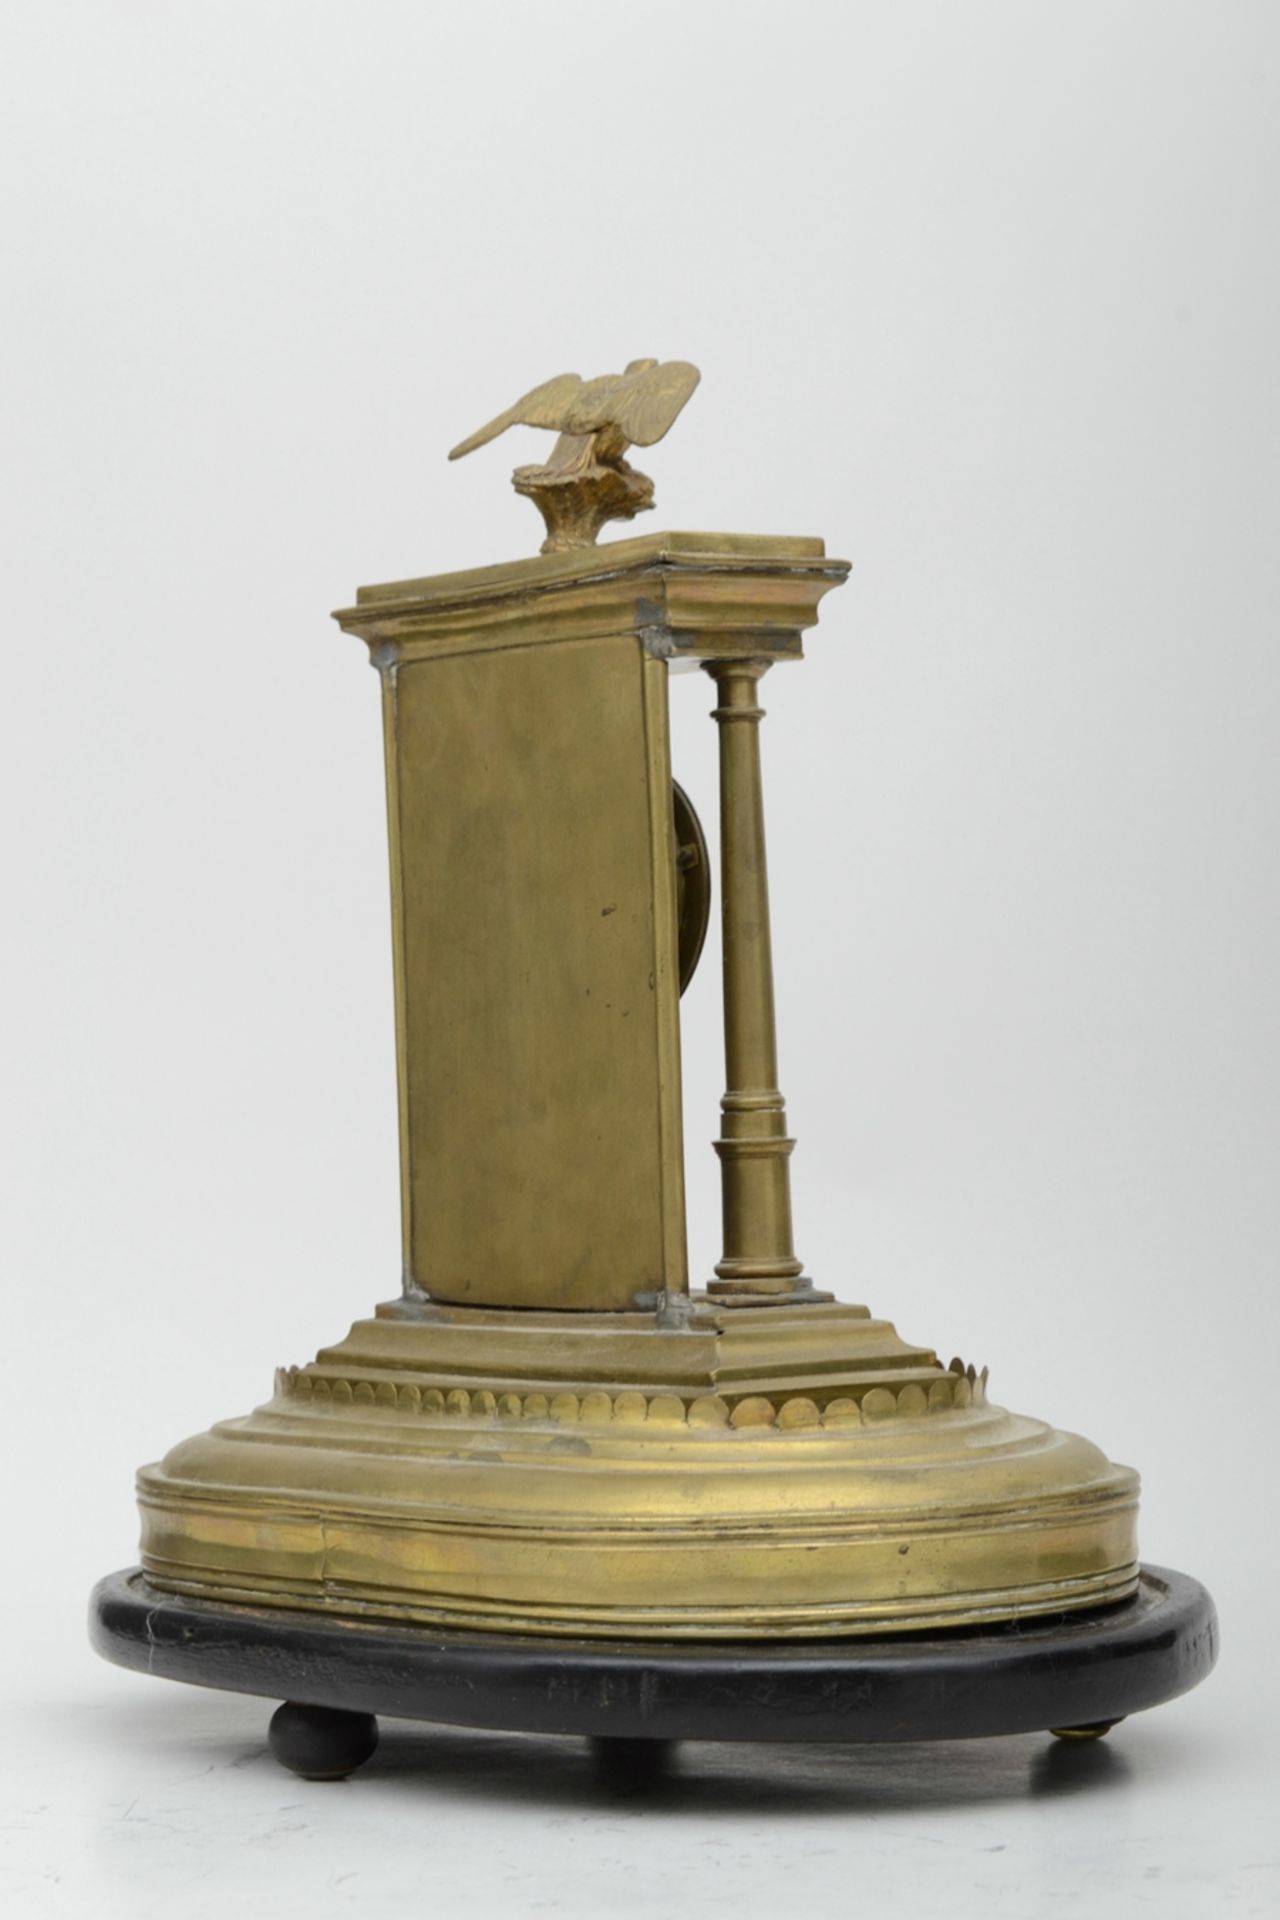 Dekorative Tischuhr in Portalform, von Adler gekrönt; ungeprüftes, mechanisches Uhrwerk, unterhalb - Image 5 of 7